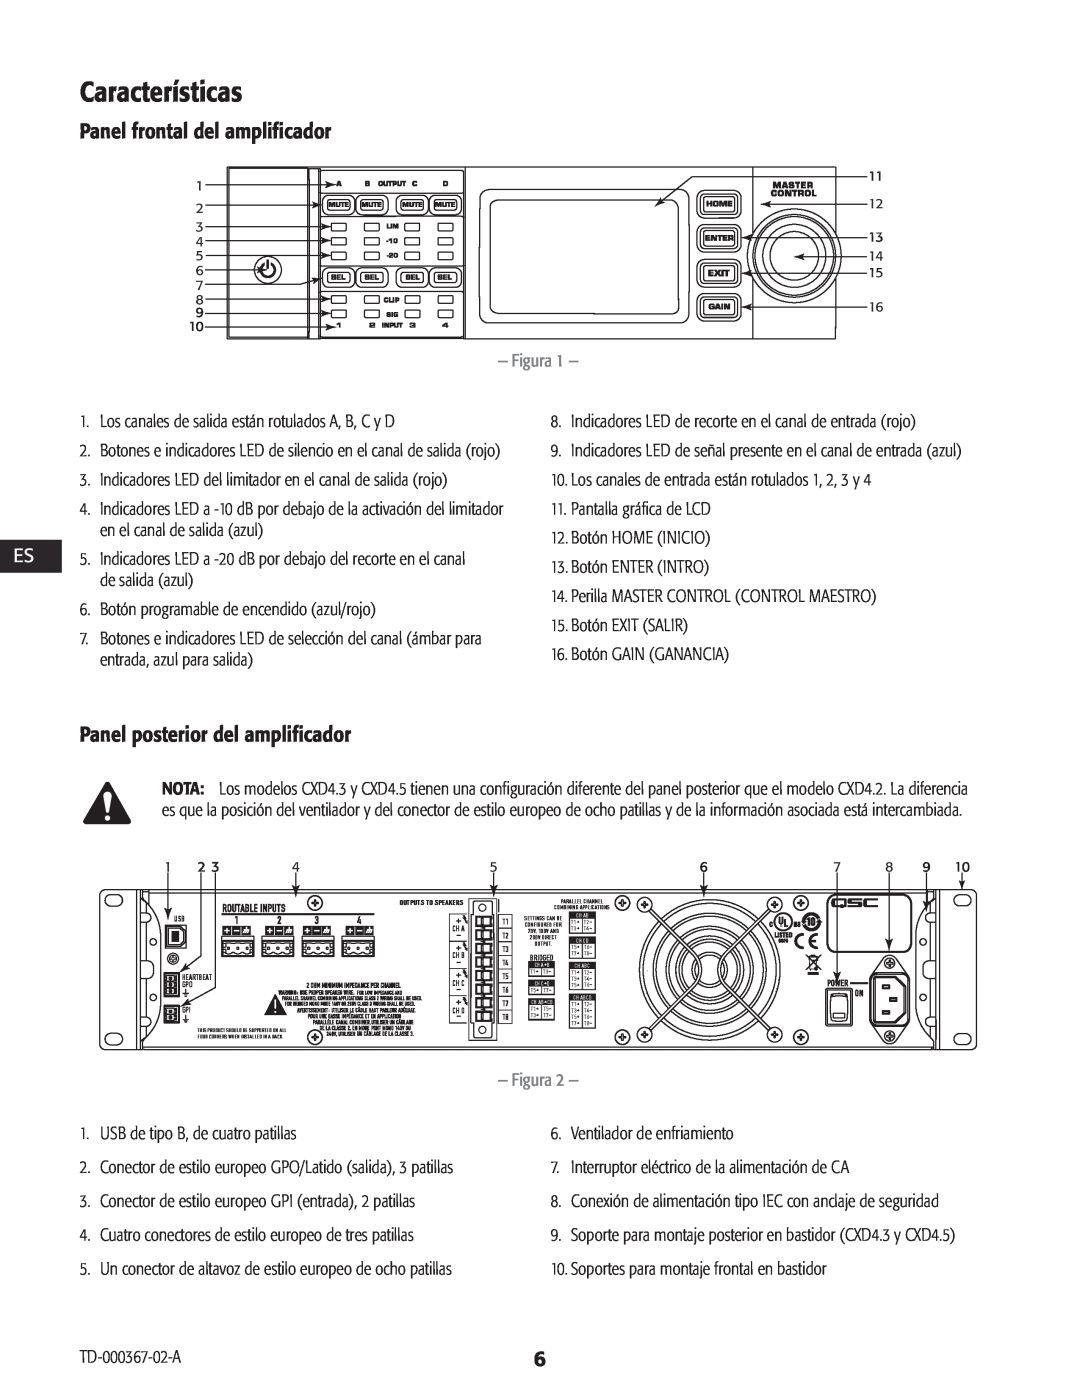 QSC Audio CXD4.2, CXD4.5, CXD4.3 Características, Panel frontal del amplificador, Panel posterior del amplificador, Figura 